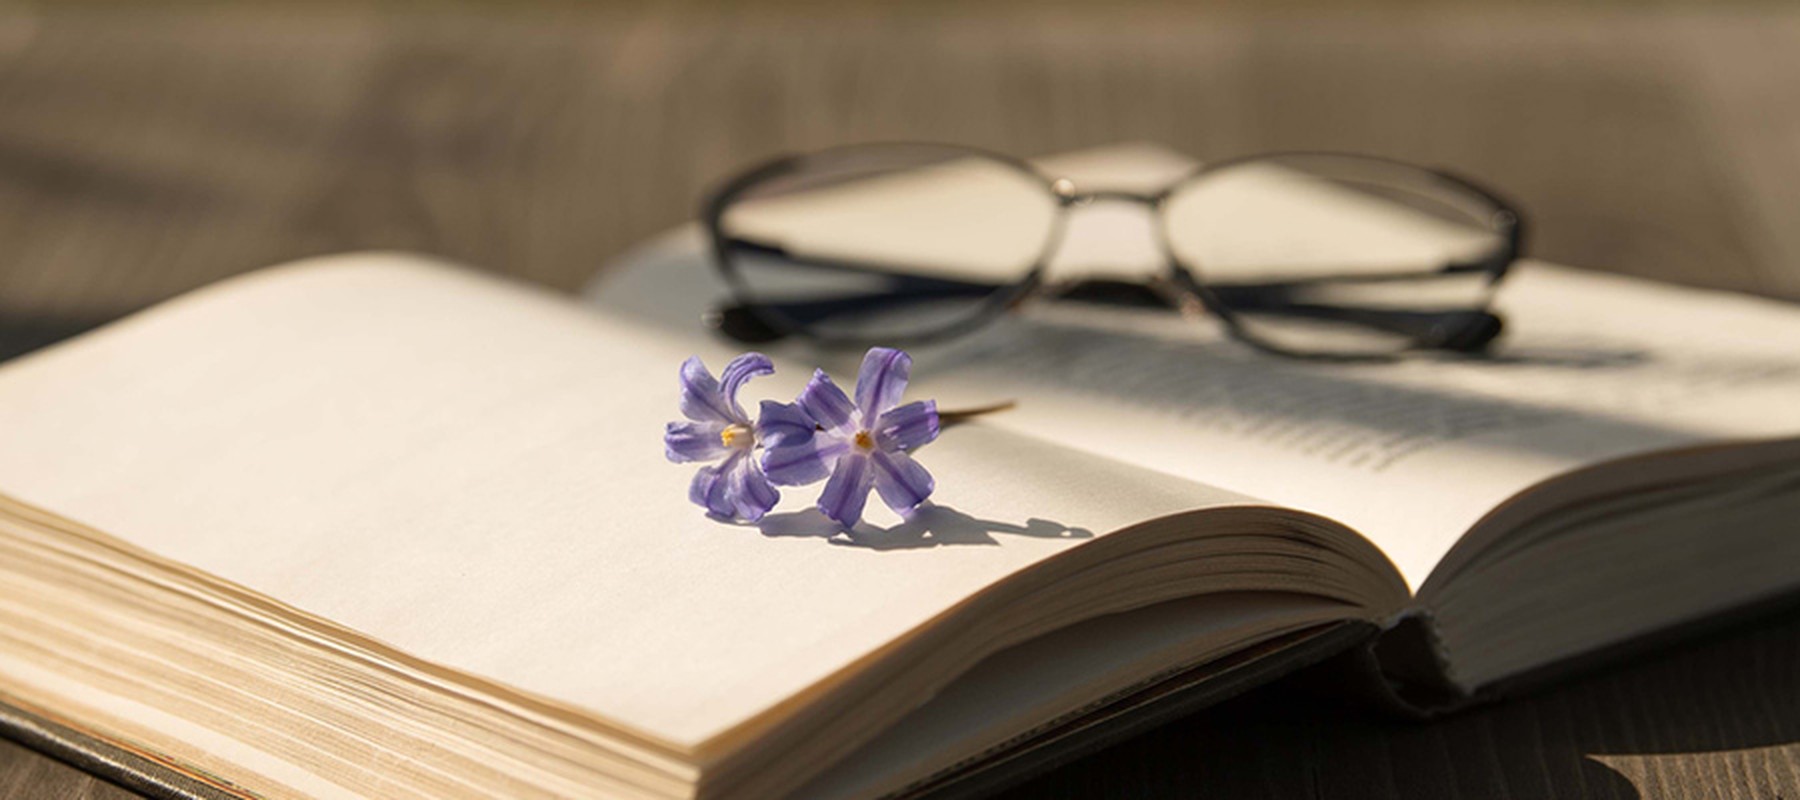 Unas gafas de lectura y una flor de color violeta sobre un libro abierto